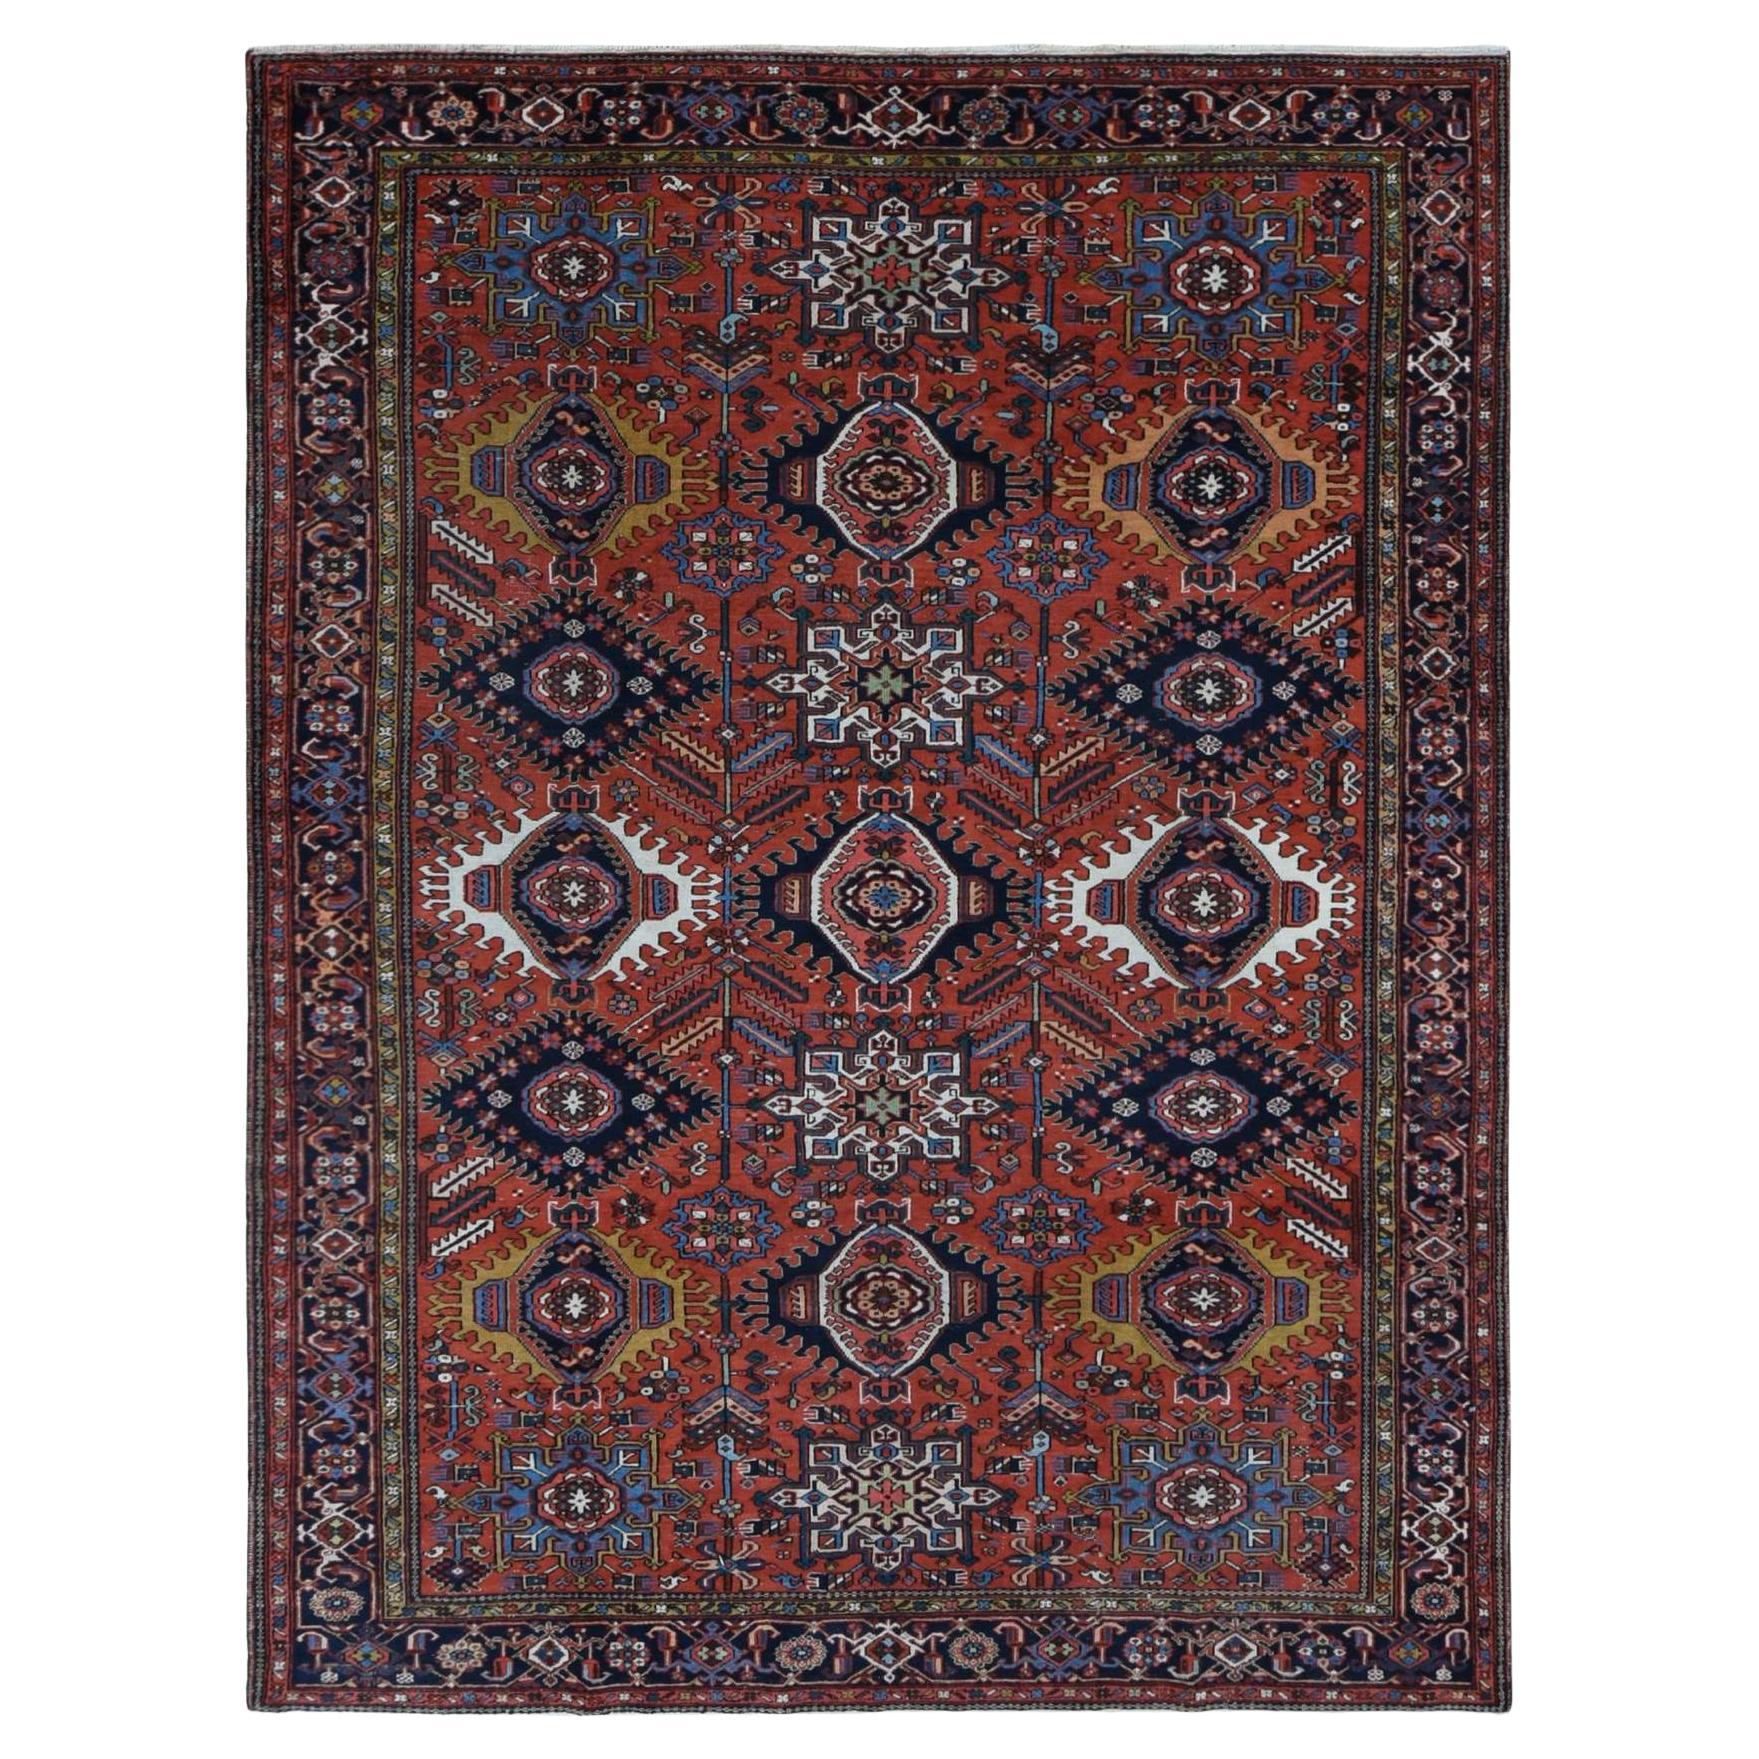 Roter antiker persischer Karajeh-Teppich aus reiner Wolle mit geometrischen Medaillons, handgeknüpft